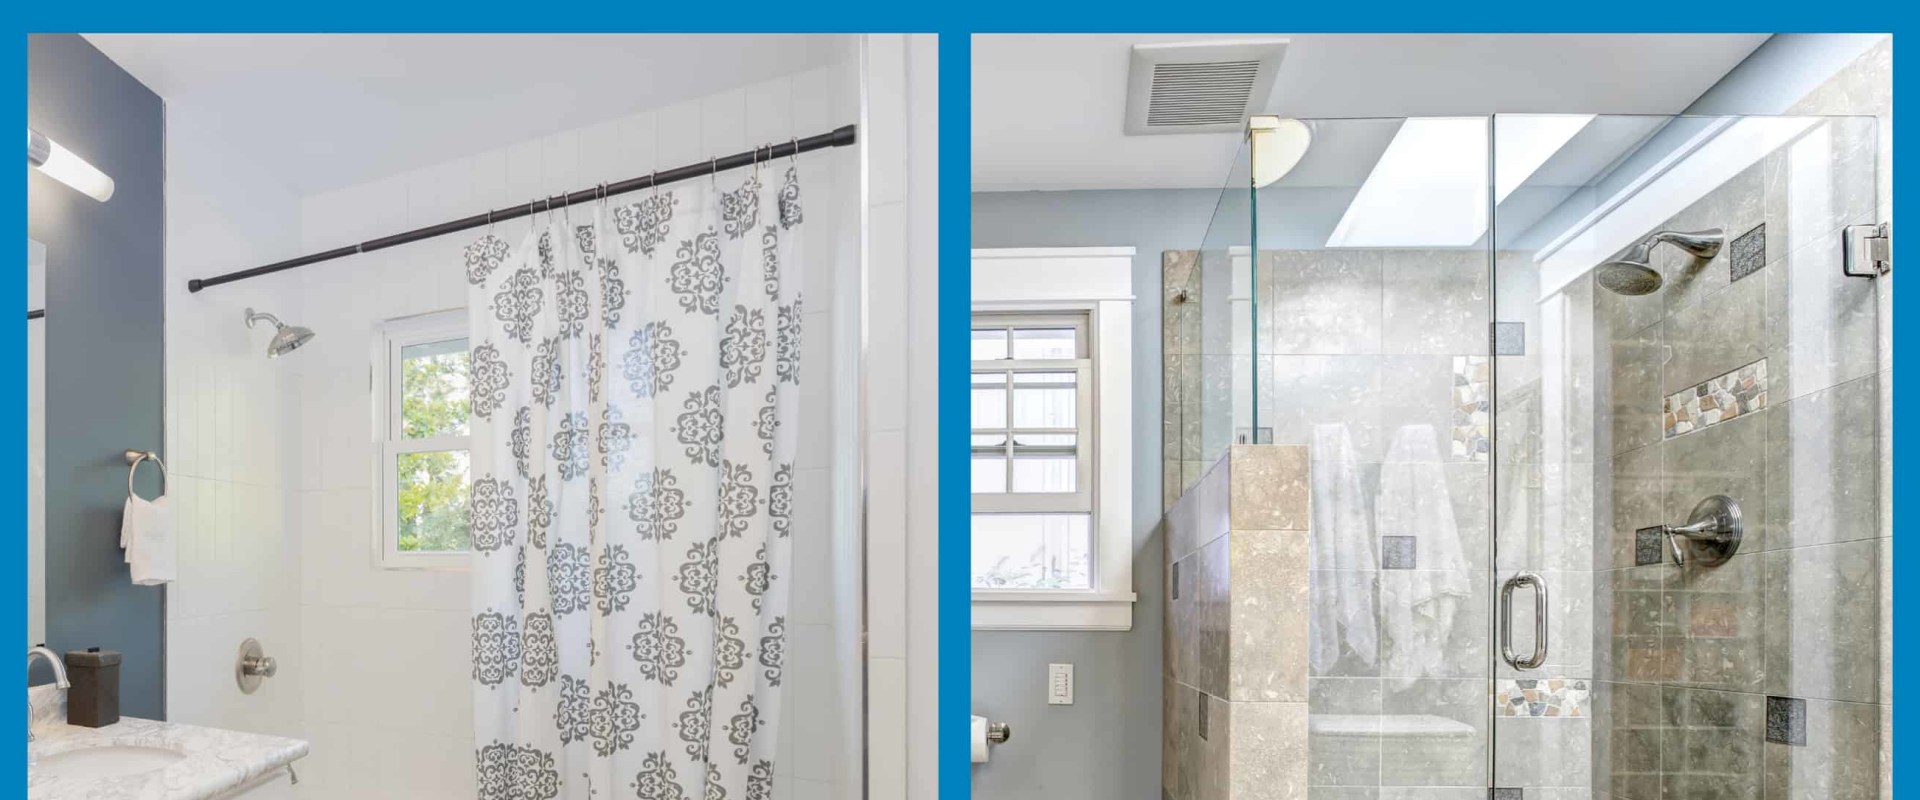 Is a Shower Door Better Than a Shower Curtain?